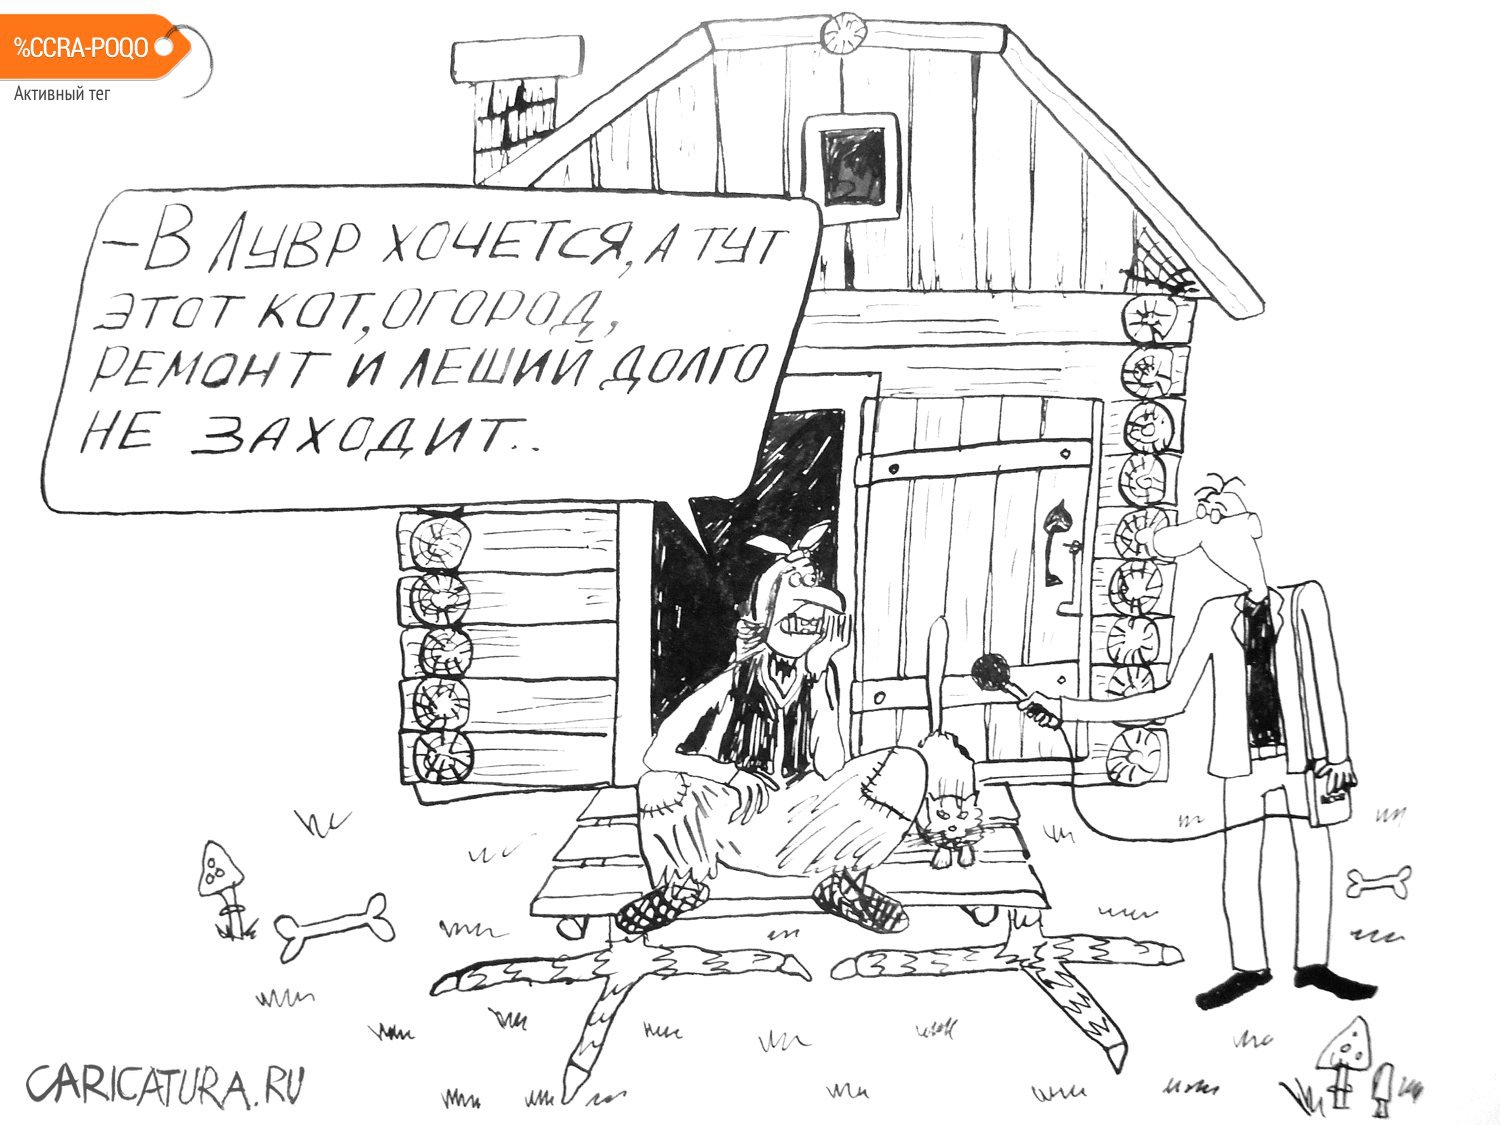 Карикатура "Баба Яга", Александр Петров